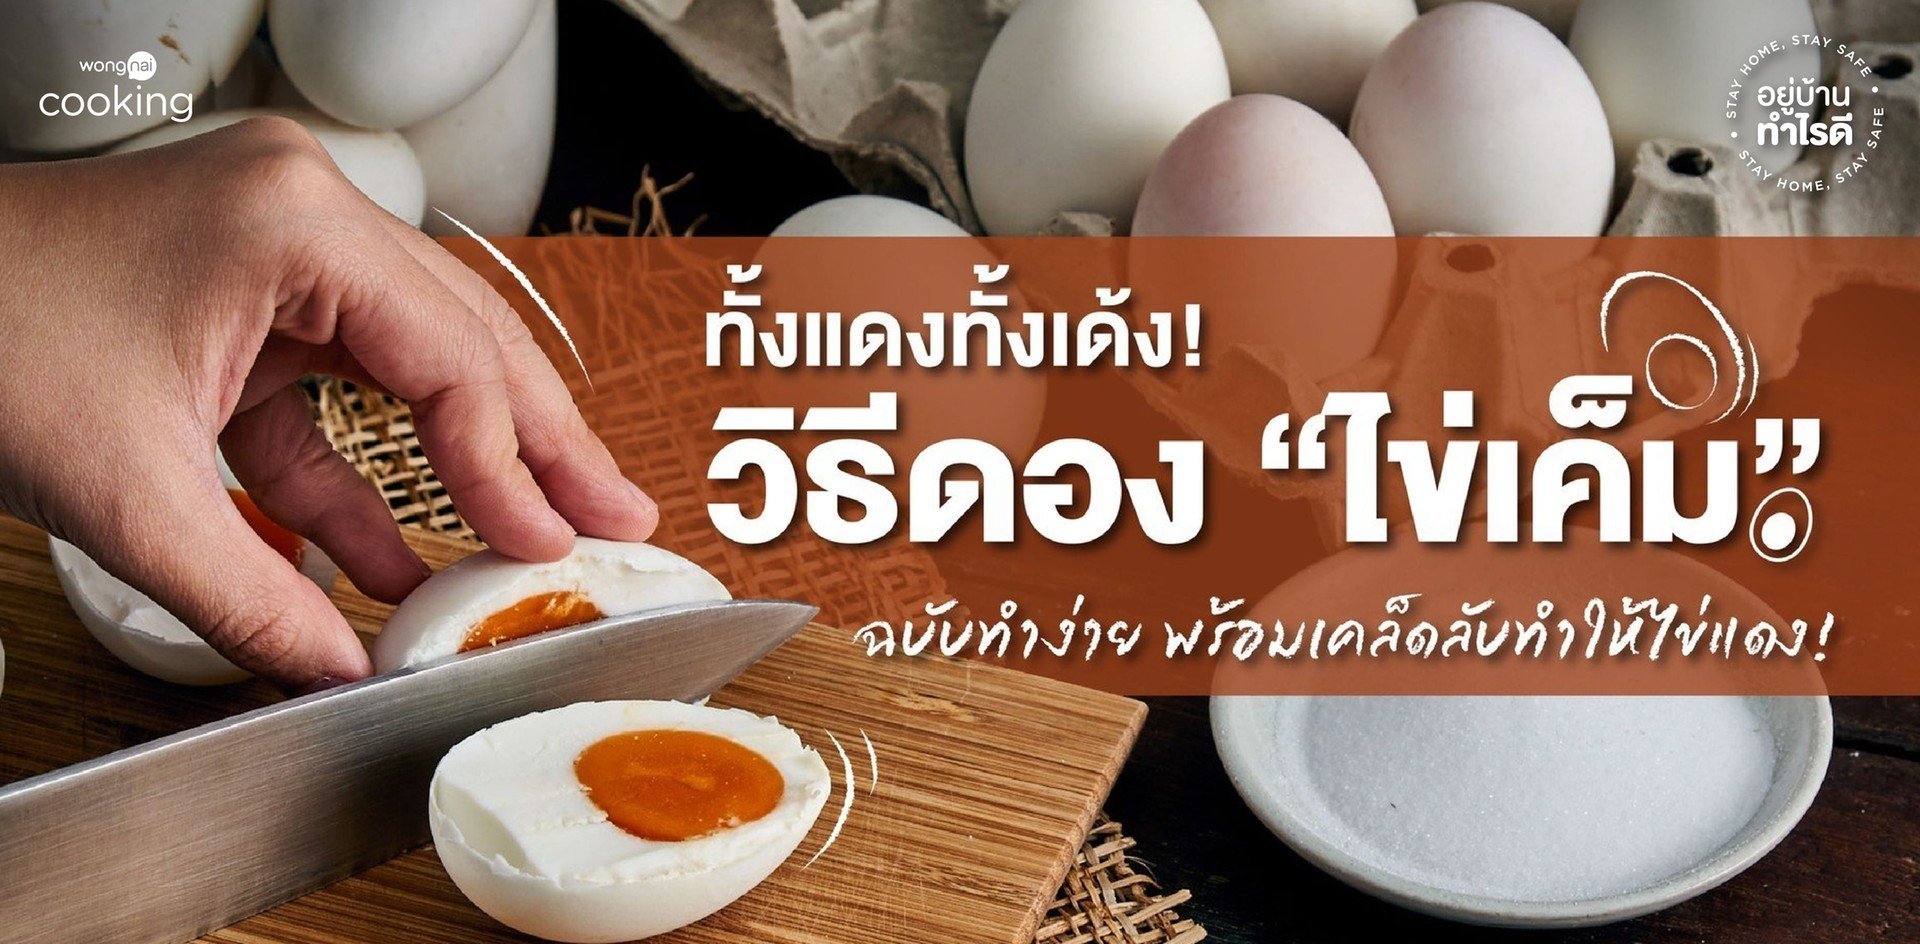 วิธีทำไข่เค็ม ฉบับทำง่ายภายใน 1 อาทิตย์ พร้อมเคล็ดลับทำให้ไข่แดงสวย!